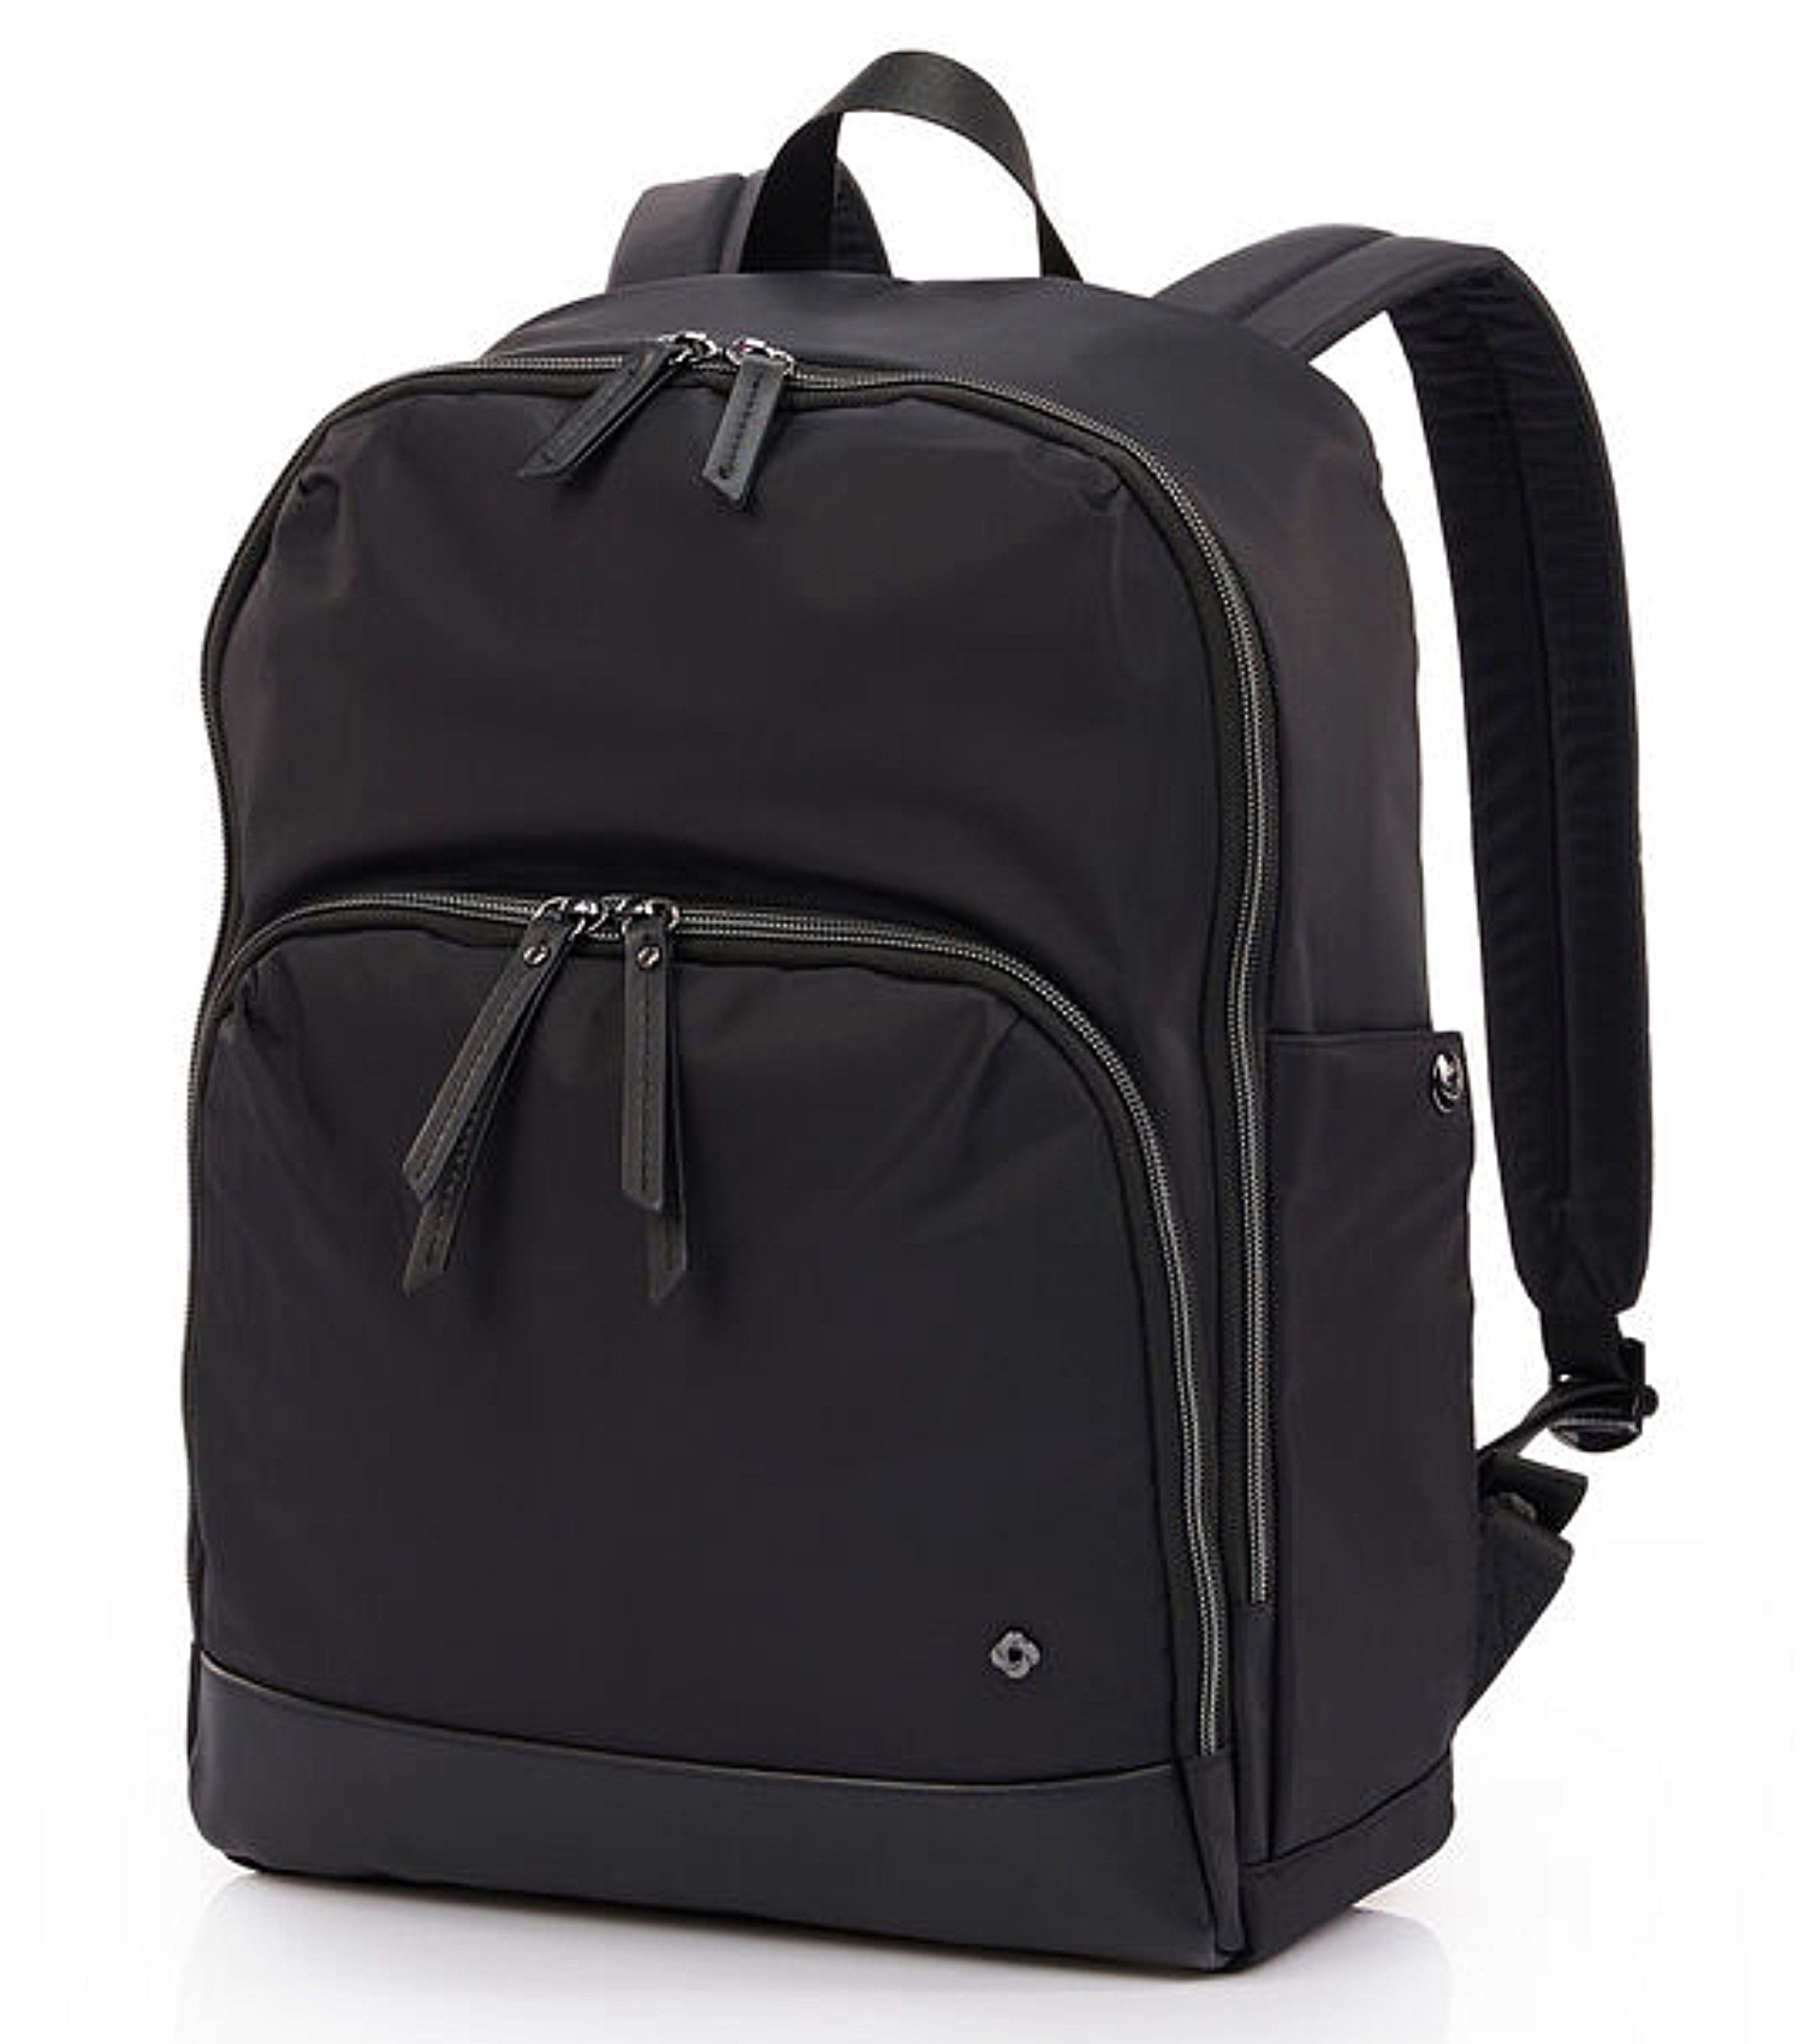 Samsonite Classic Carryall Antimicrobial Backpack - Black by Samsonite ...